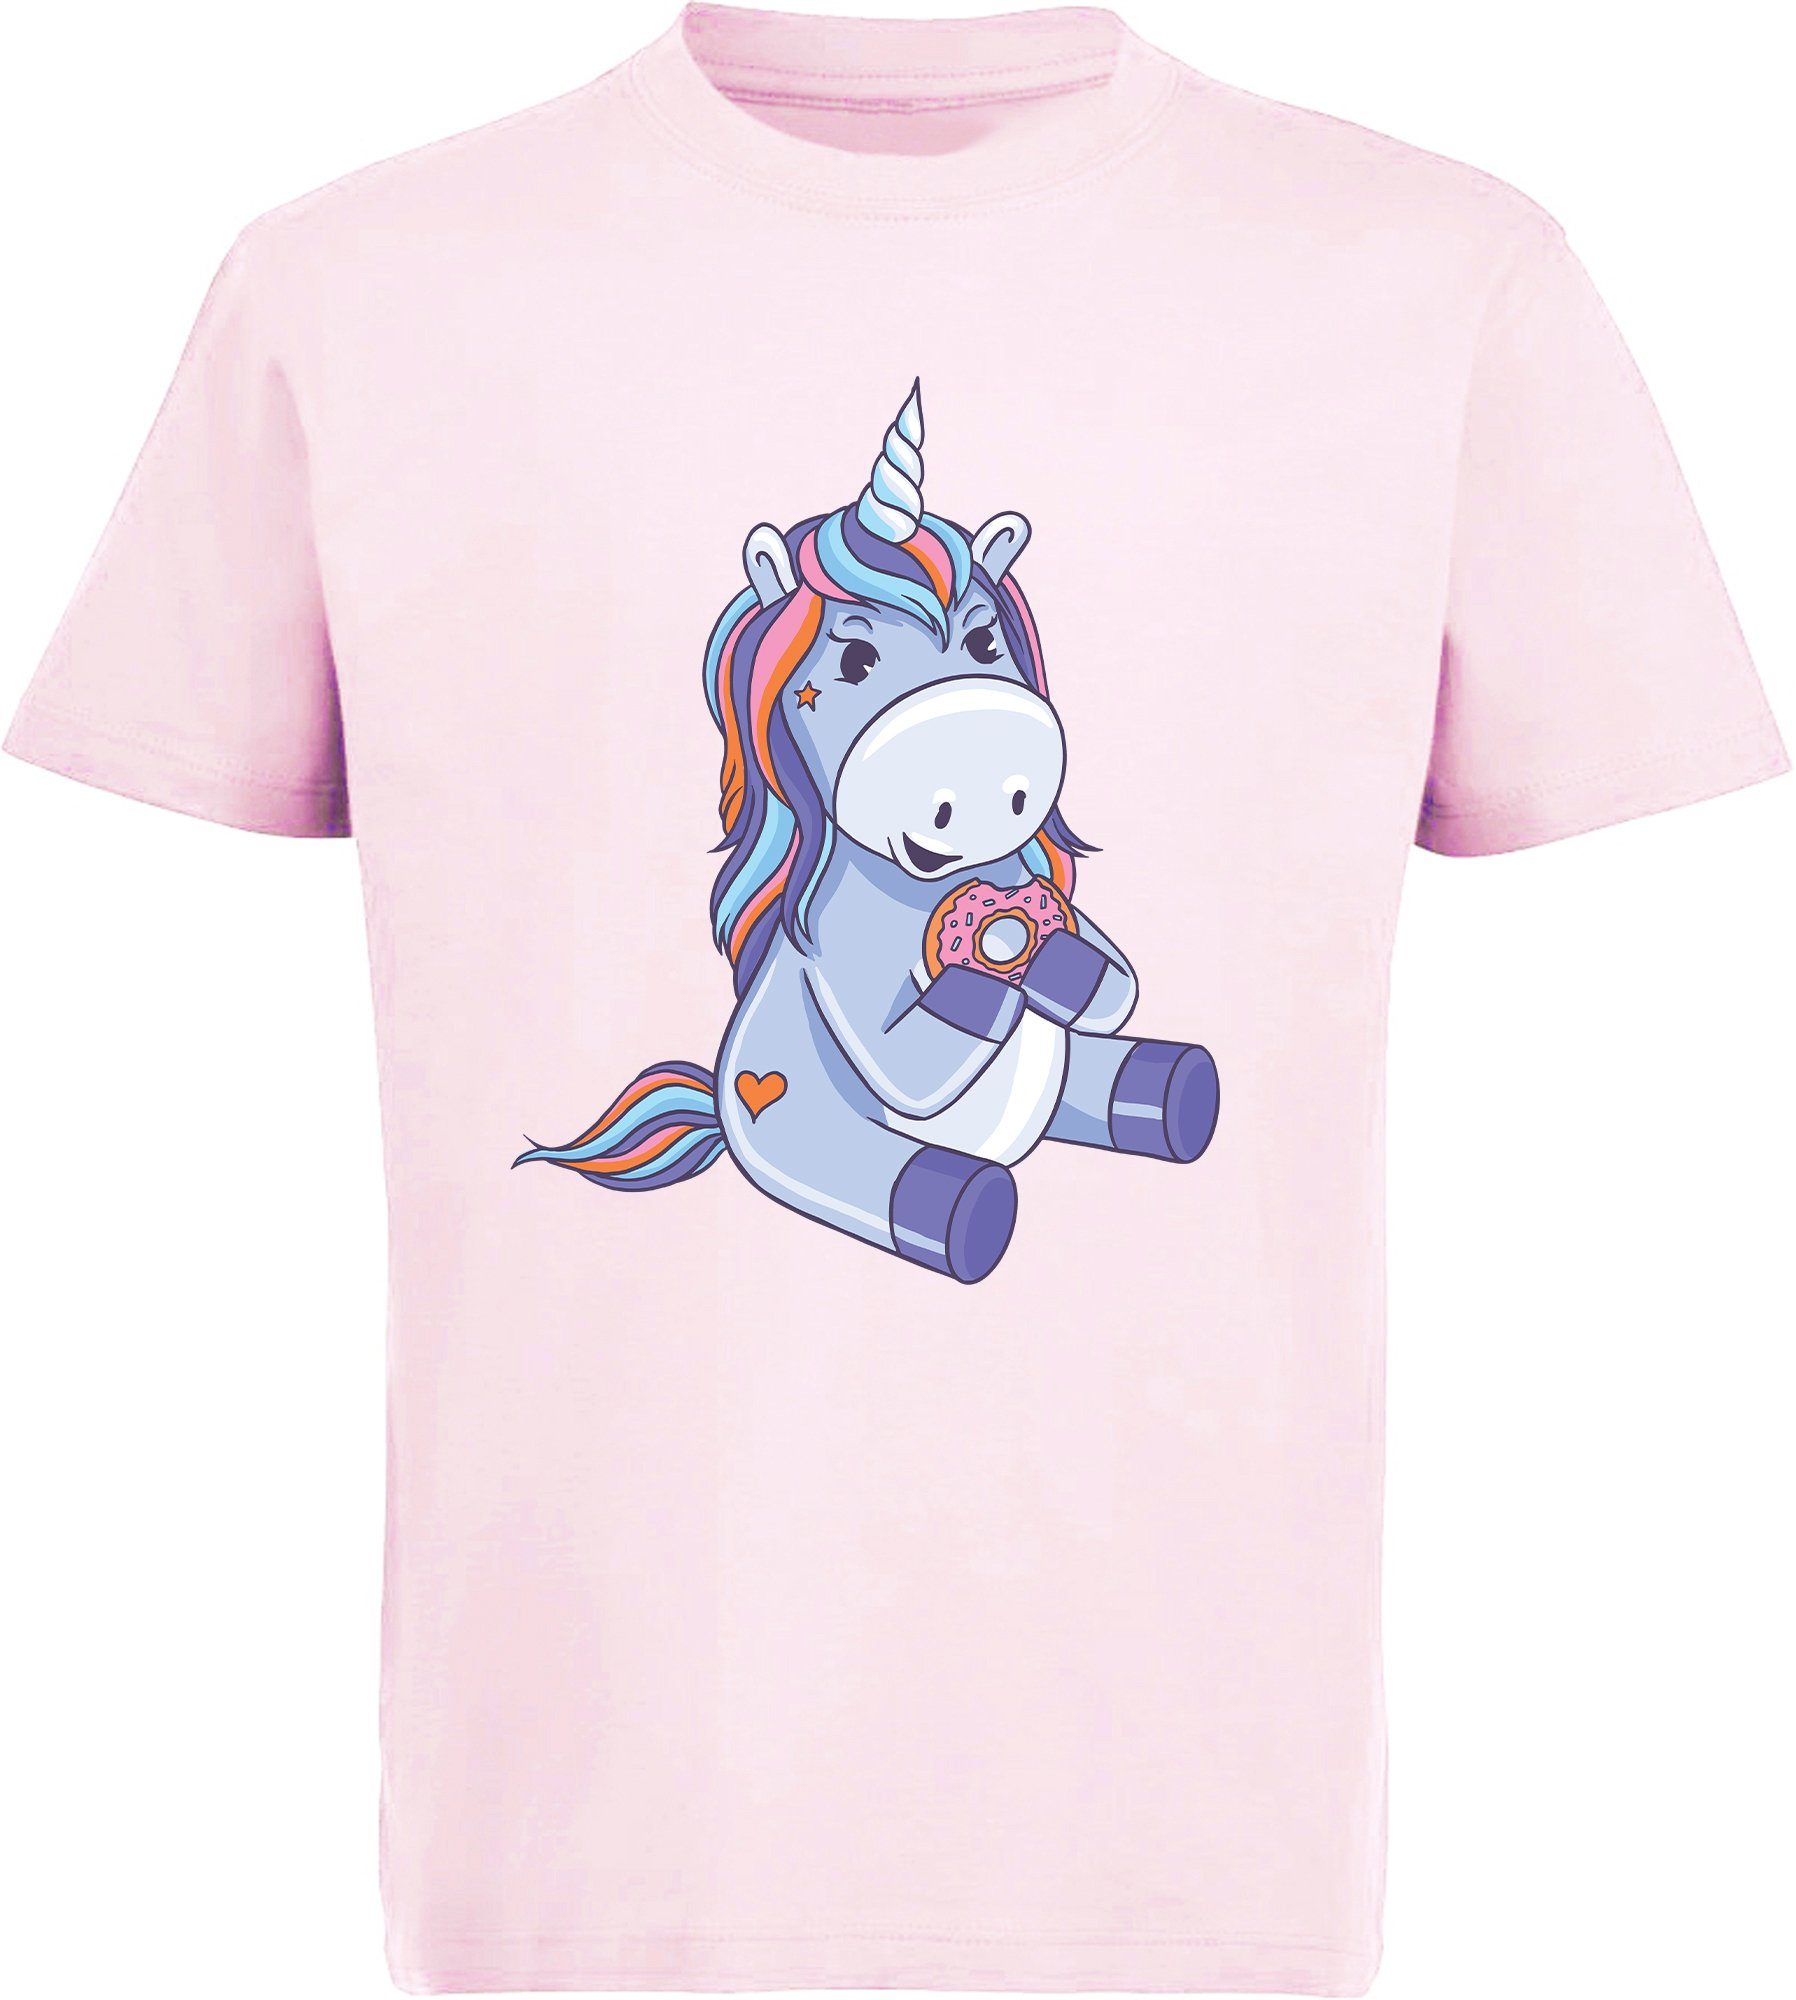 mit Donut Baumwollshirt i249 rosa Aufdruck, T-Shirt Shirt MyDesign24 - bedruckt Einhorn essendes Print Kinder Einhorn